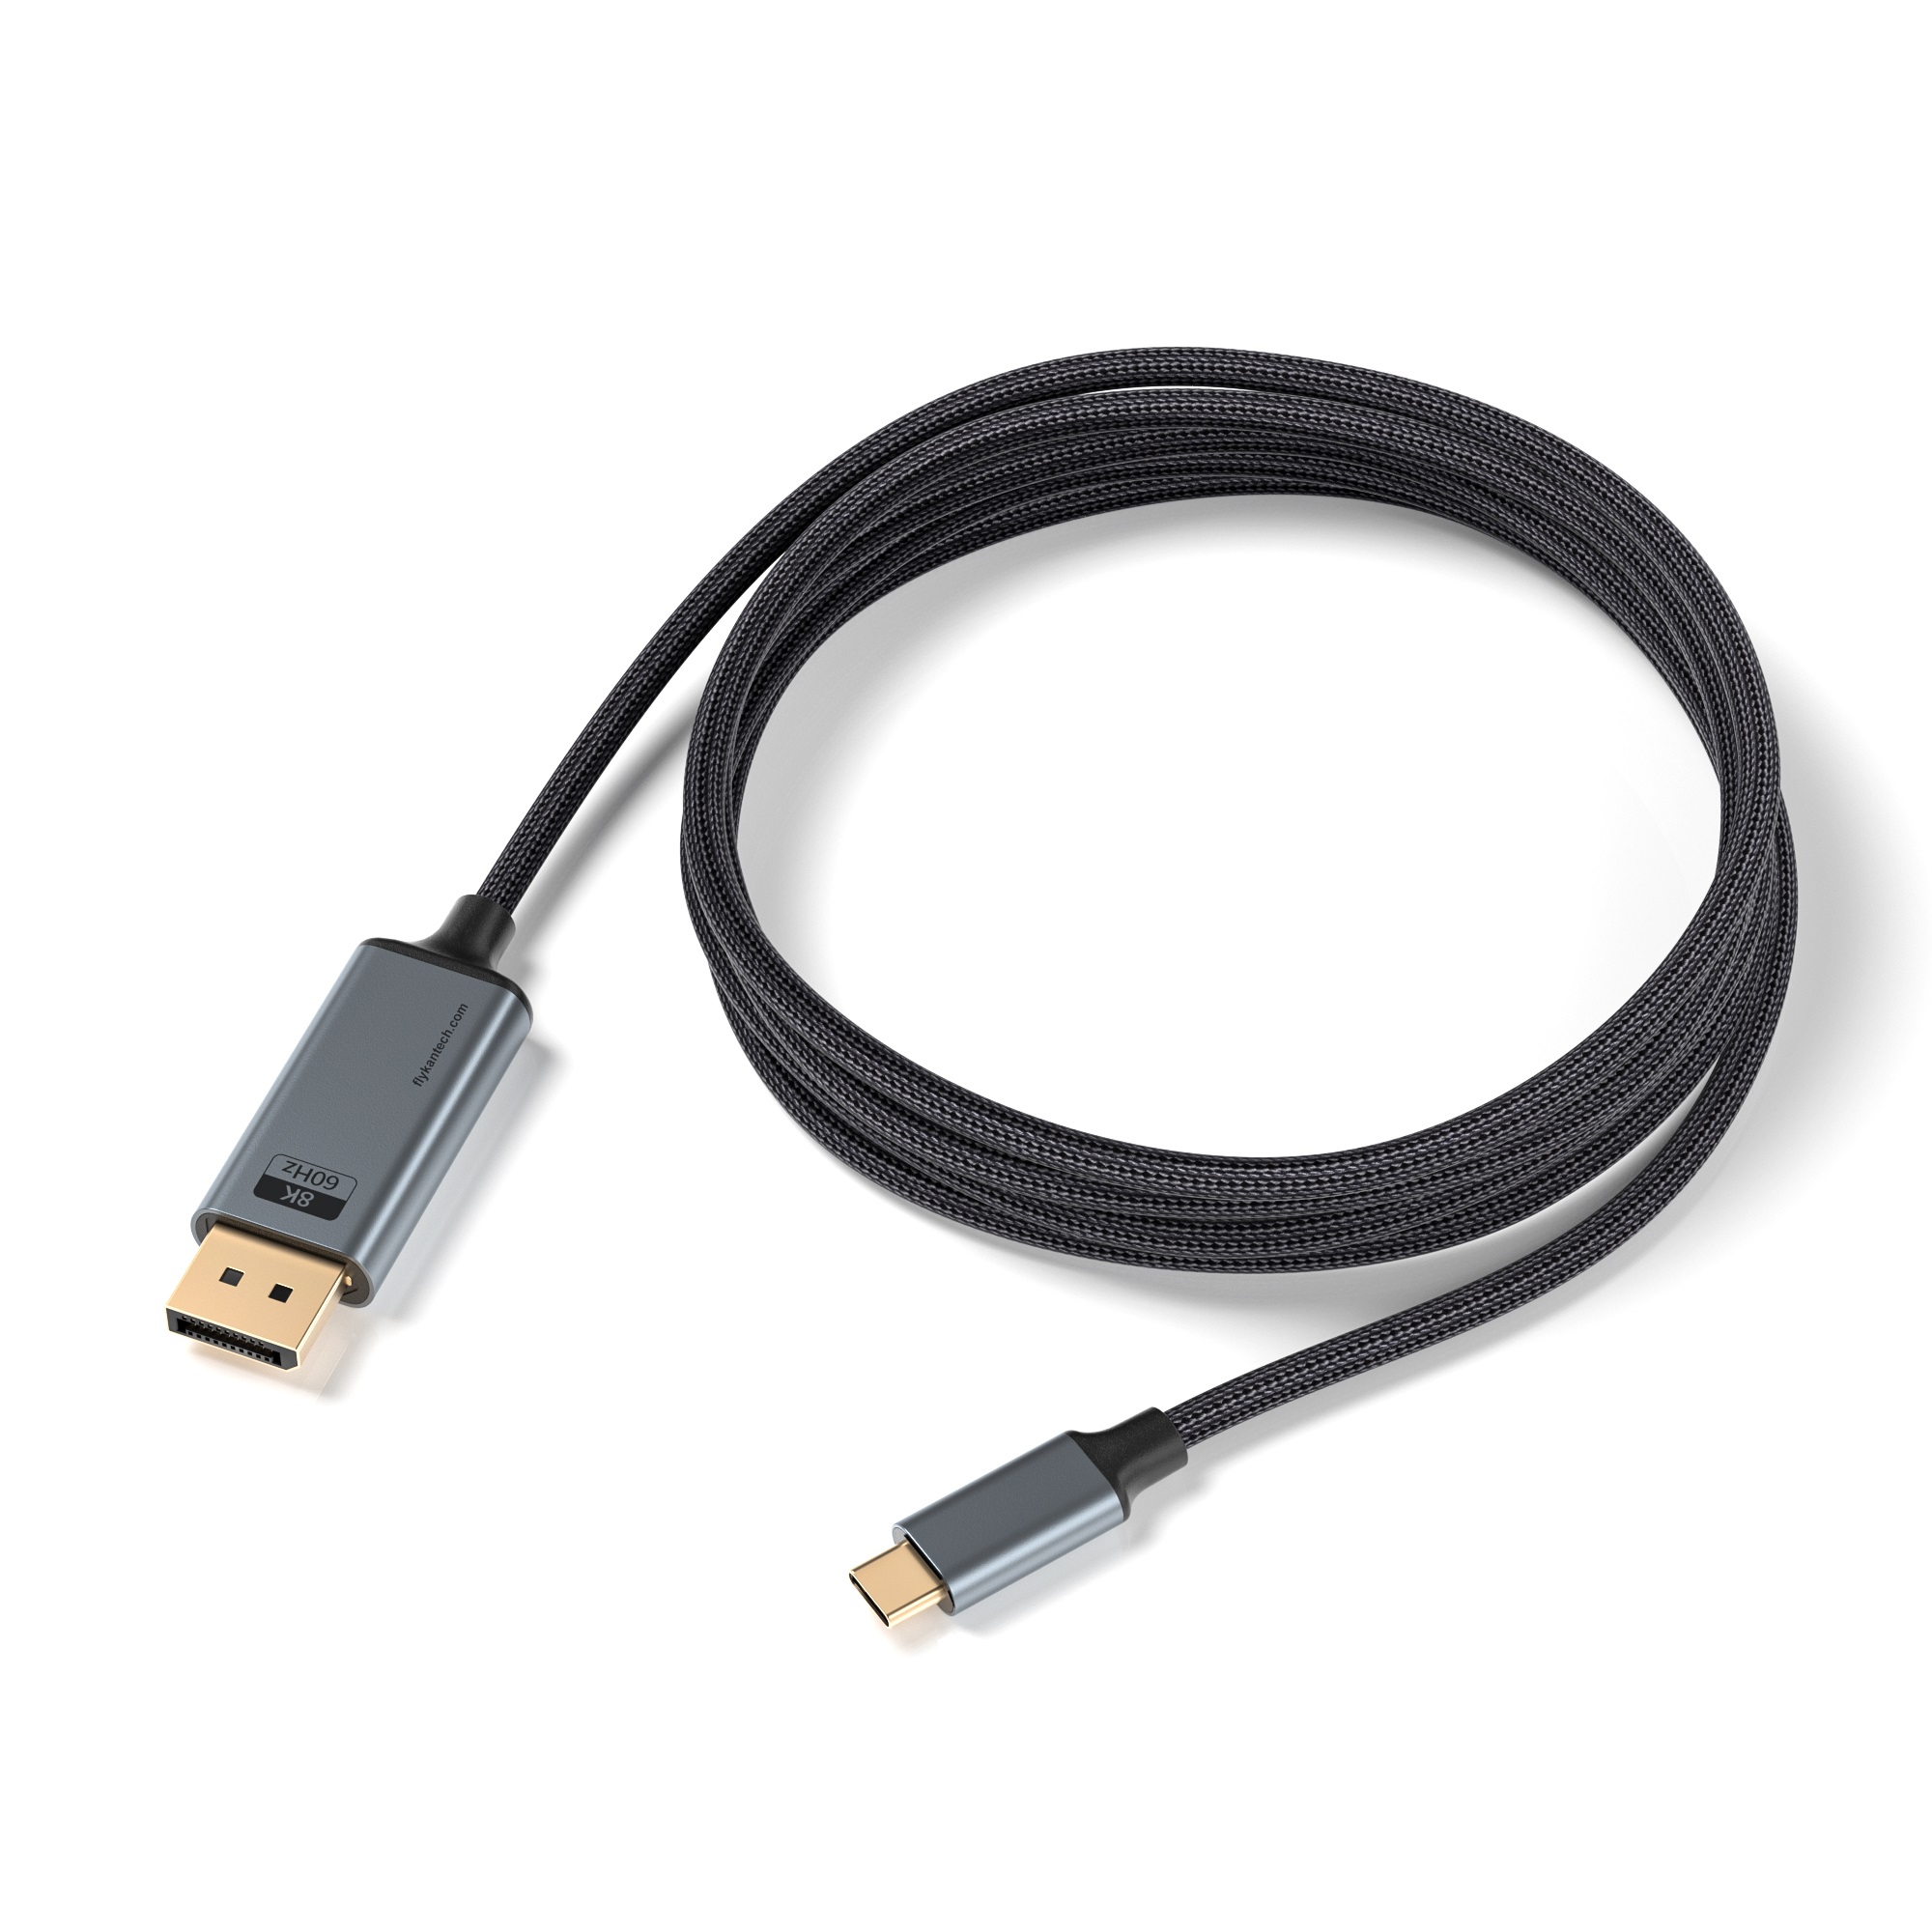 CDP2DP860-18-M1 | Bidirektionales USB-C auf DisplayPort 1.4 Kabel 8K 60Hz/4K